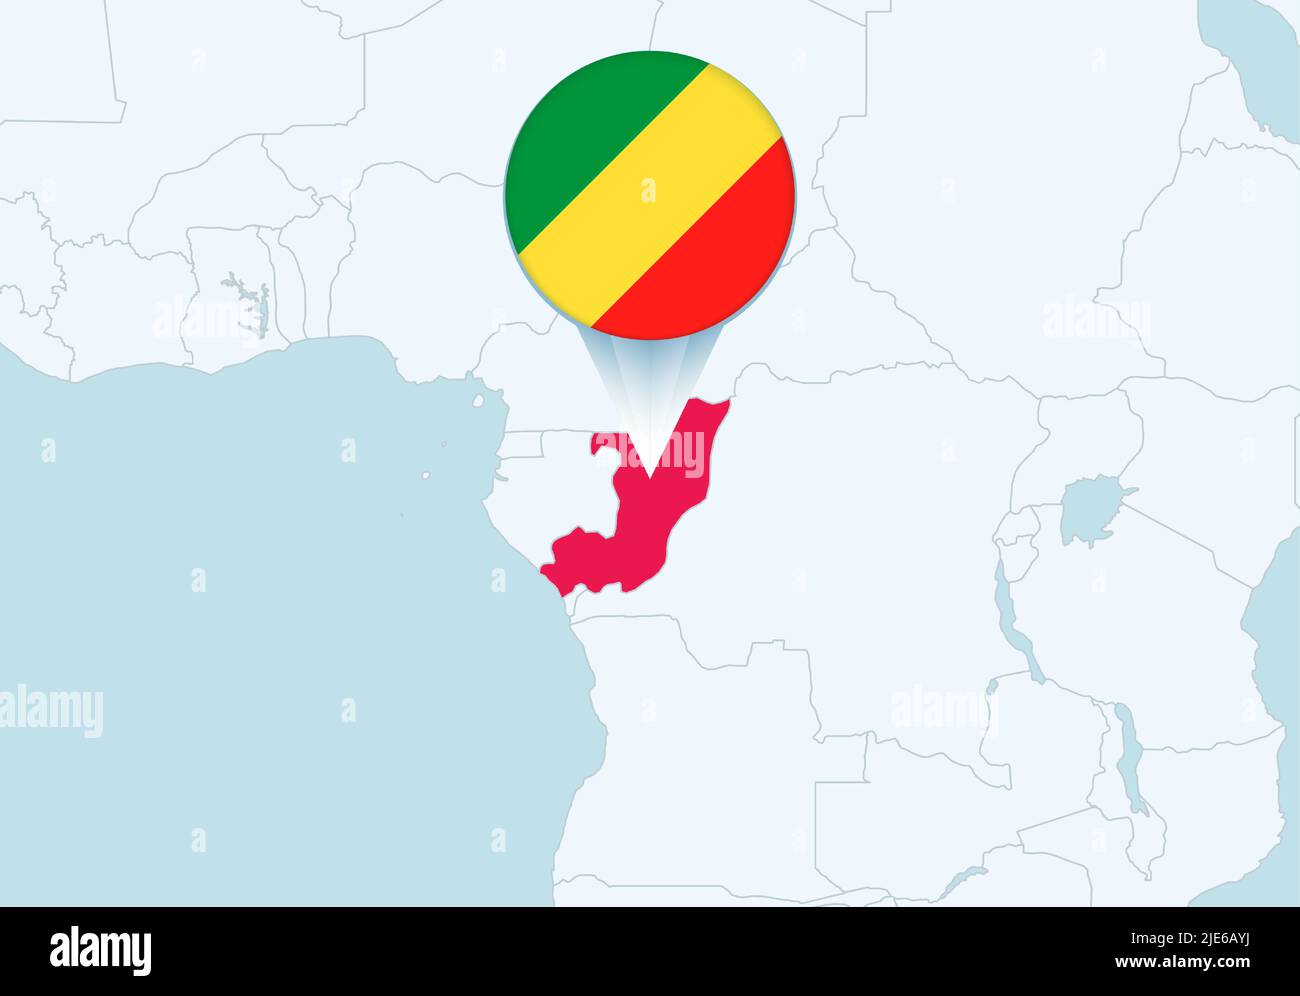 Afrique avec carte Congo sélectionnée et icône de drapeau Congo. Carte vectorielle et indicateur. Illustration de Vecteur